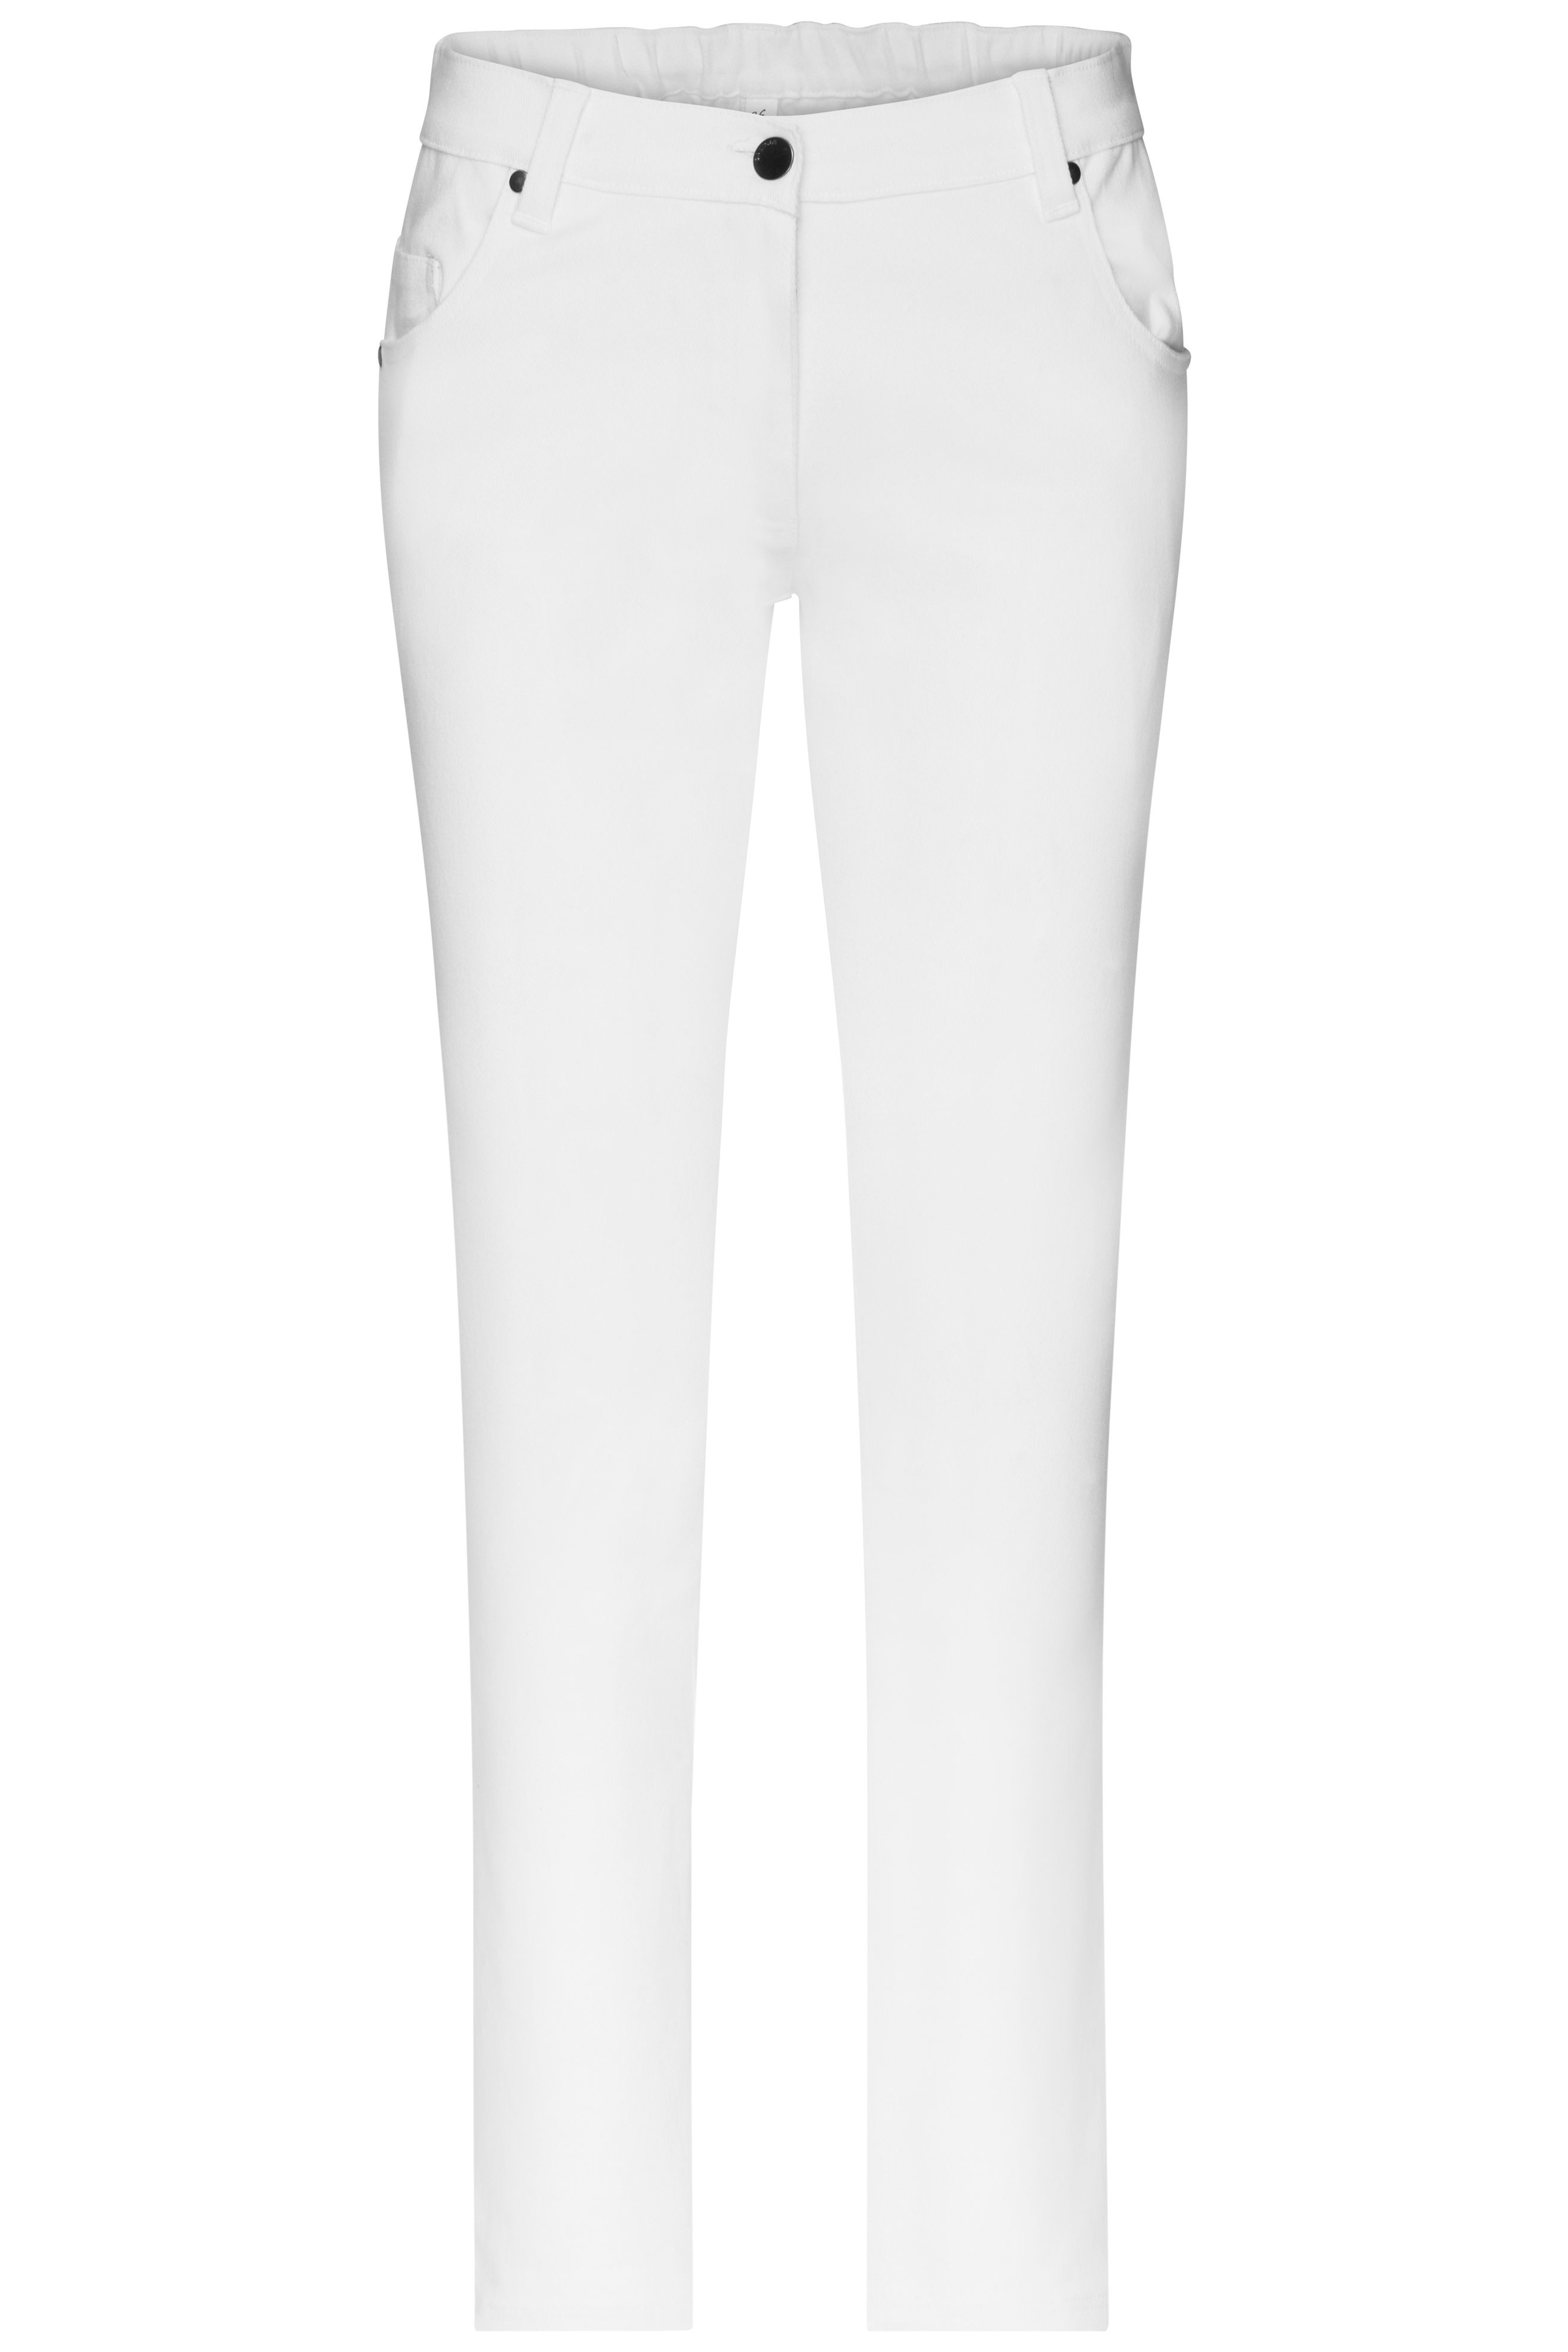 Ladies' 5-Pocket-Stretch-Pants JN3001 Hose im klassischen 5-Pocket Stil